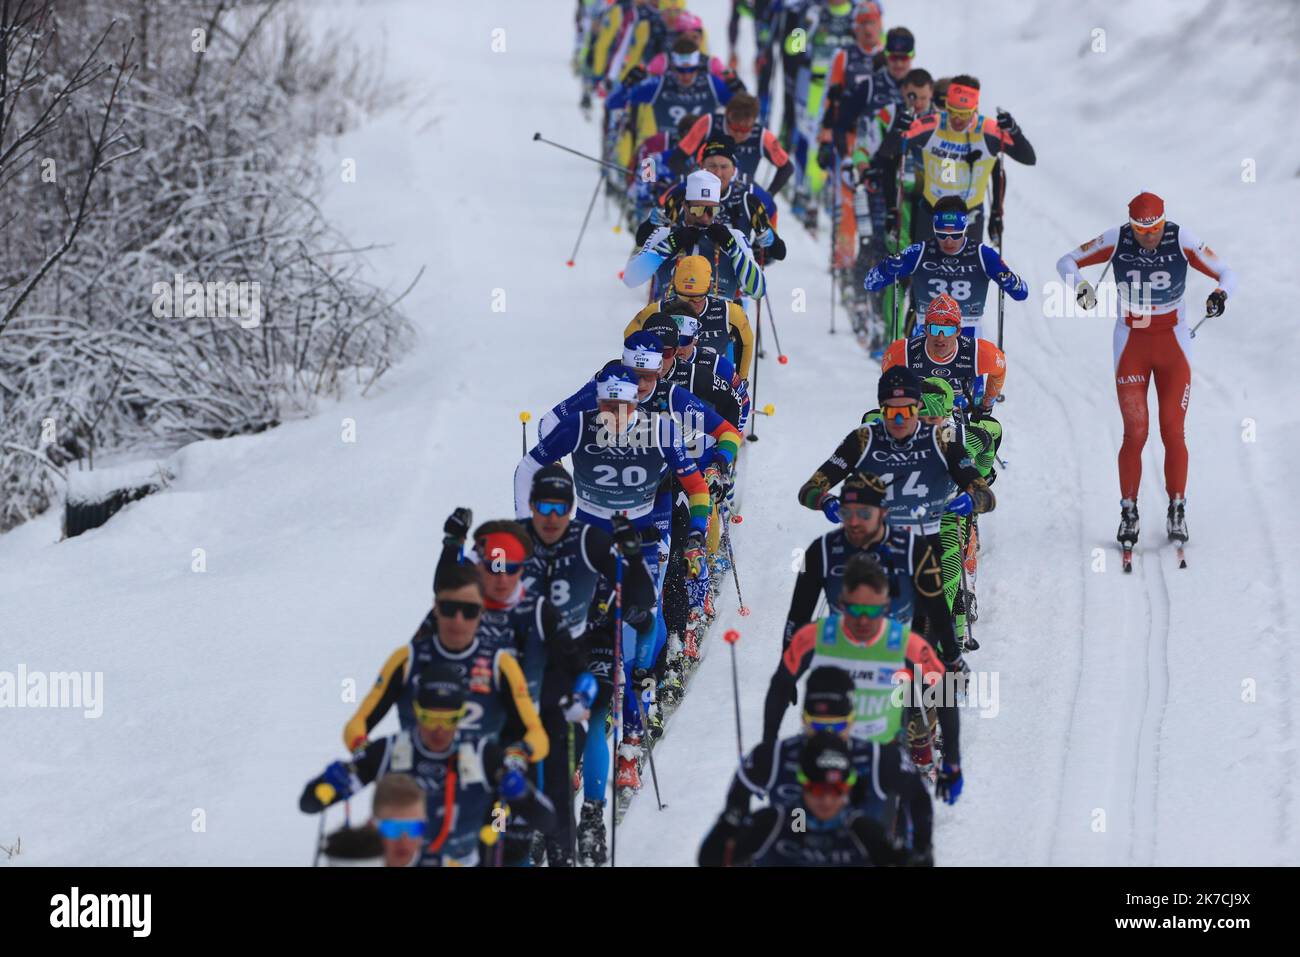 ©Pierre TEYSSOT/MAXPPP ; Coronavirus Outbreak - 50th Marcialonga - Visma Ski Classic - Una maratona di sci di fondo di 70 km con circa 2000 sciatori da Moena a Cavalese, Trentino, Nord Italia, il 31st gennaio 2021. Sciatori in azione Foto Stock